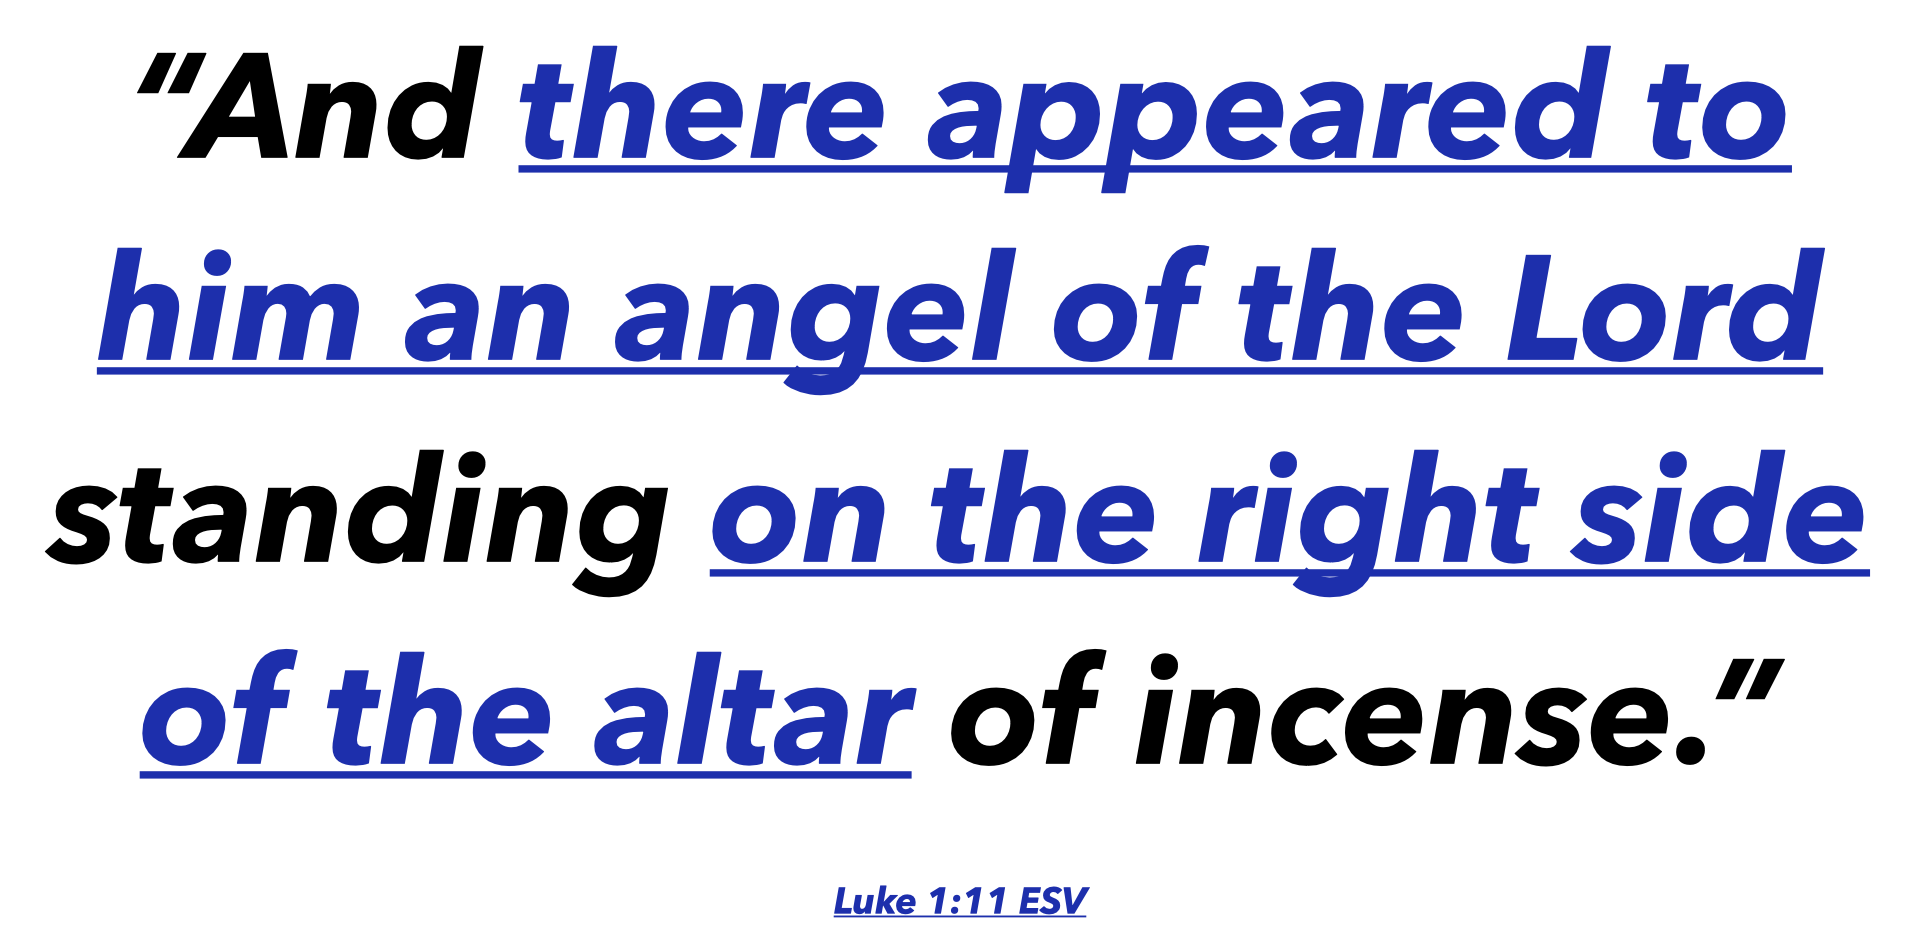 Luke 1:11